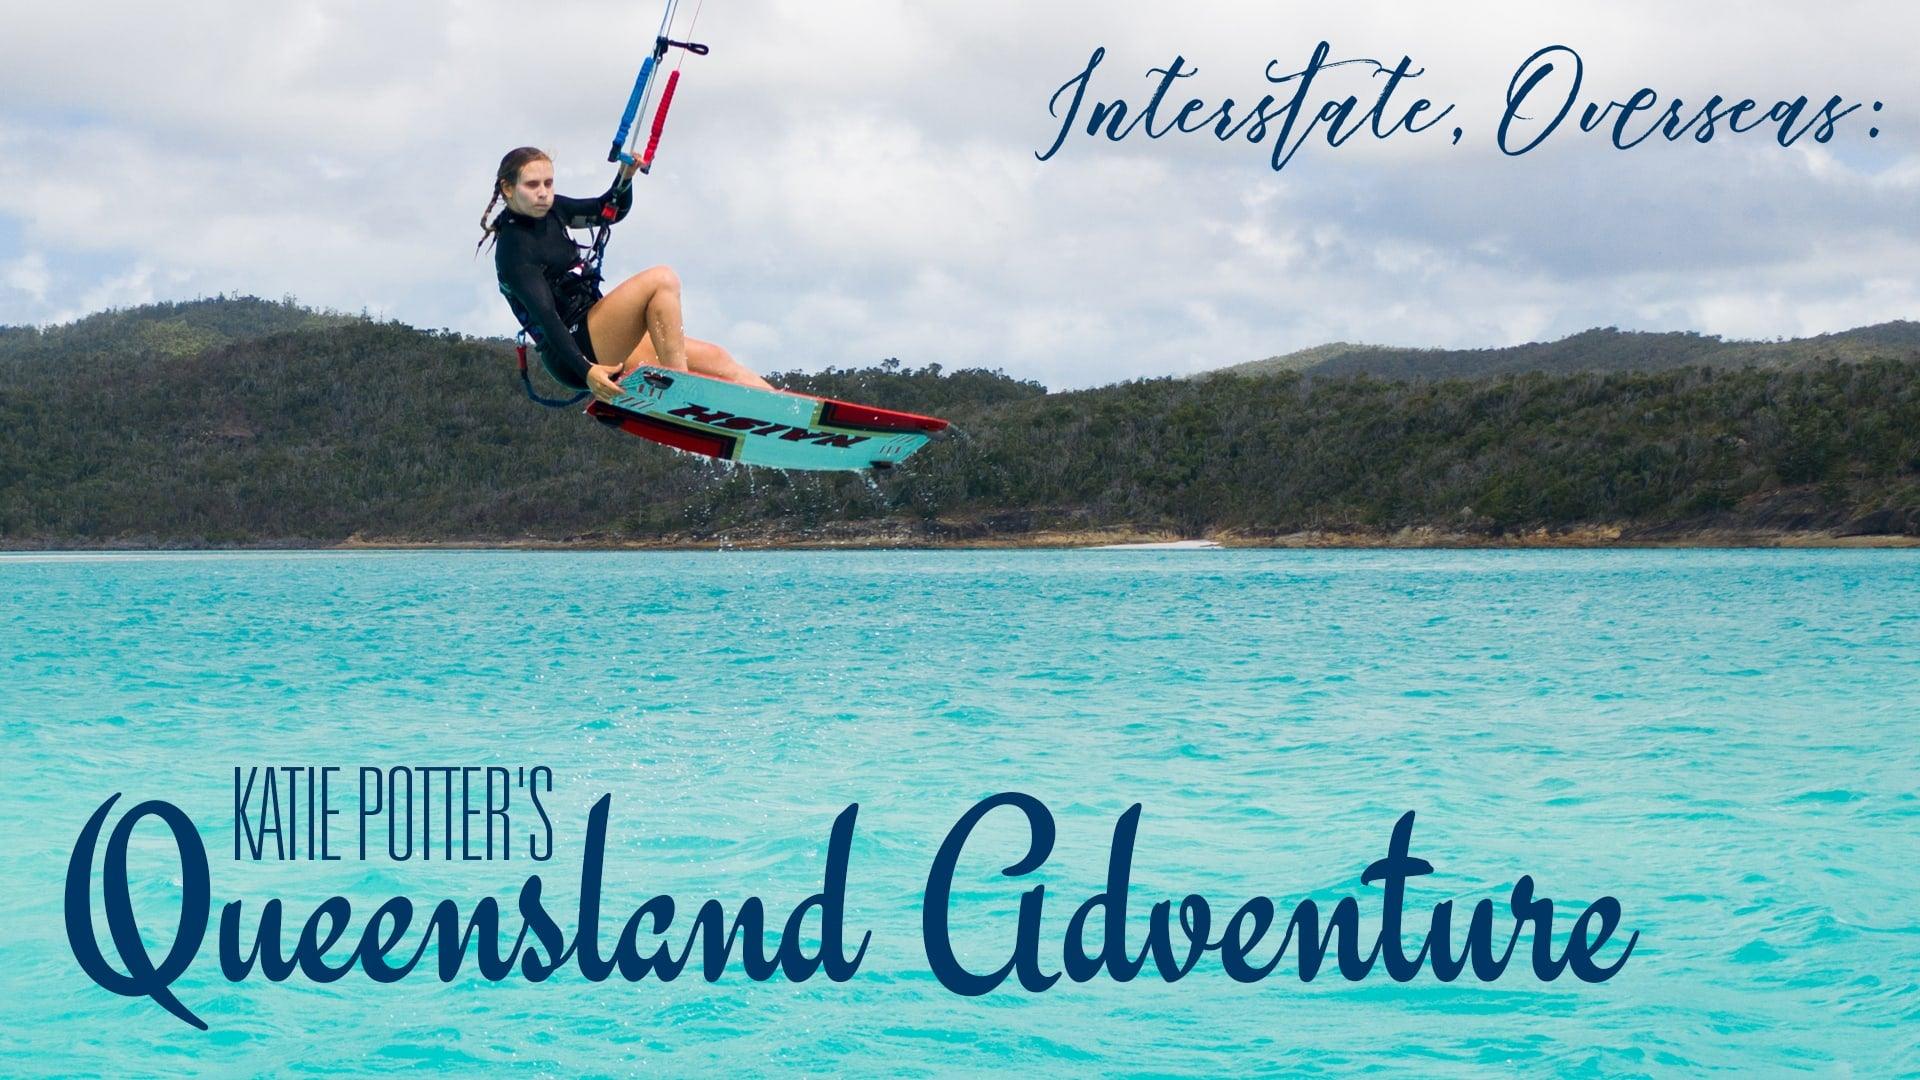 Interstate, Overseas: Katie Potter's Queensland Adventure - Naish.com